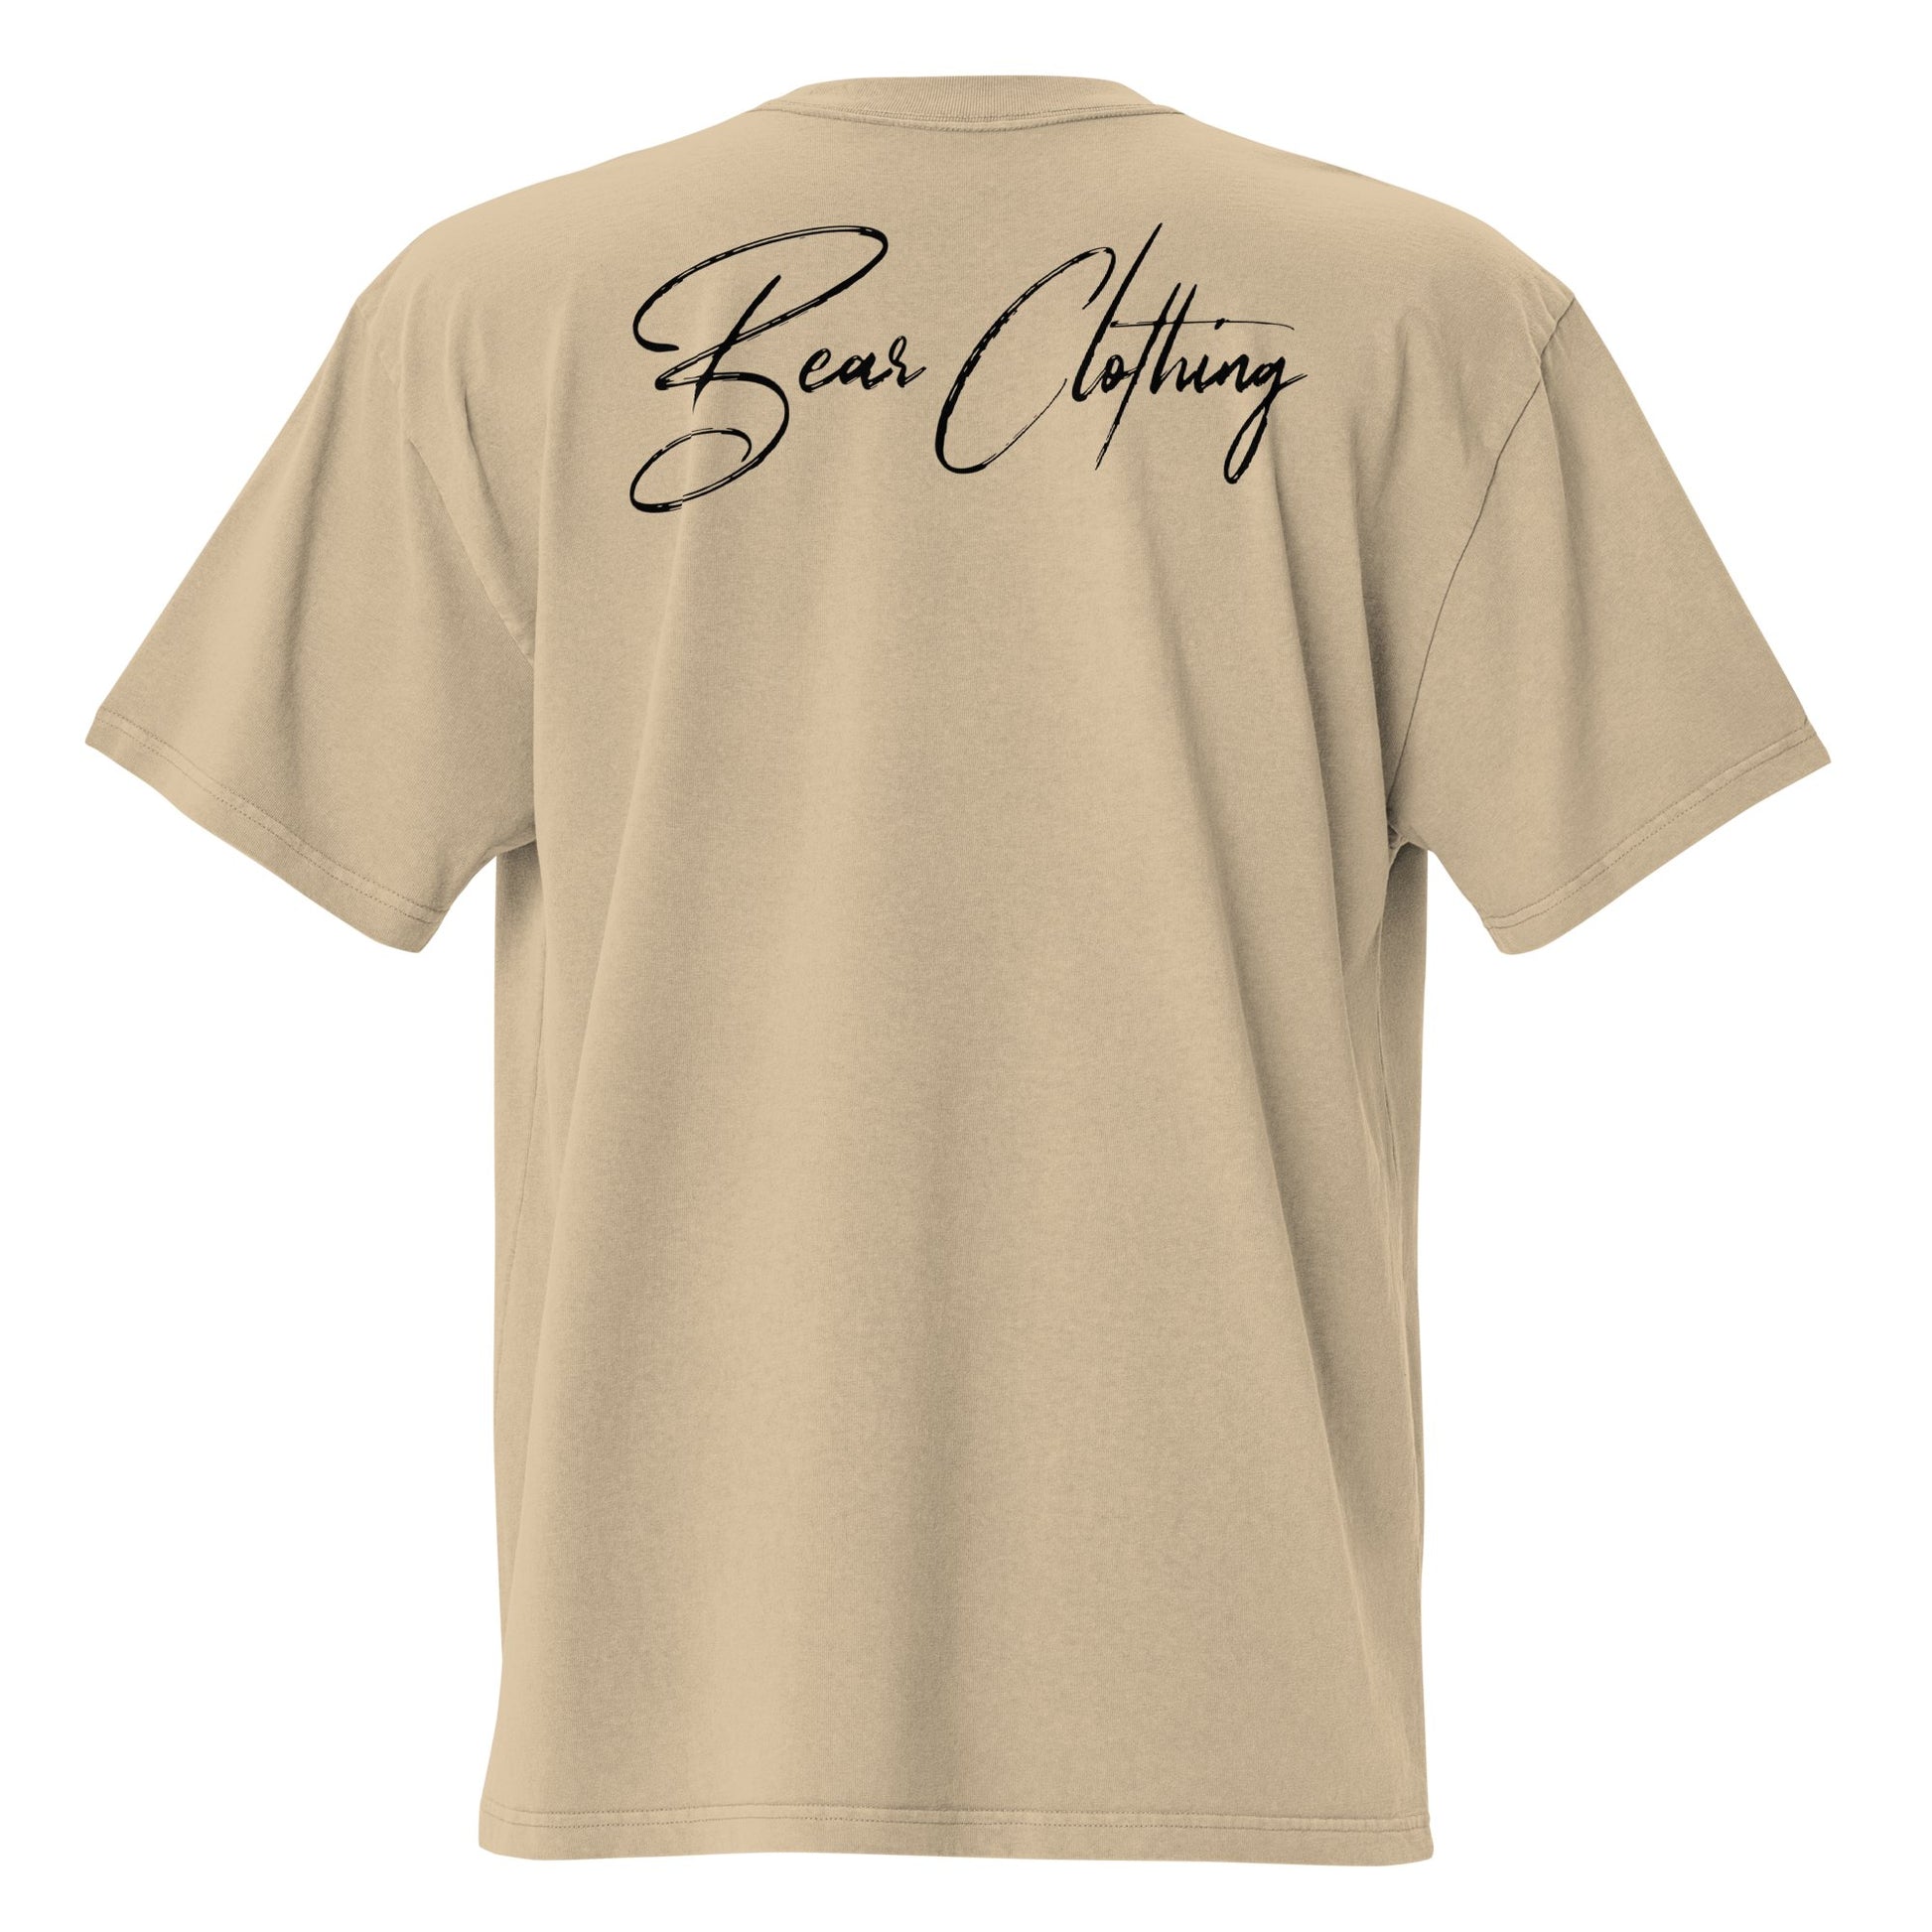 I am bear clothing oversized faded graphic t-shirt. - Bearclothing